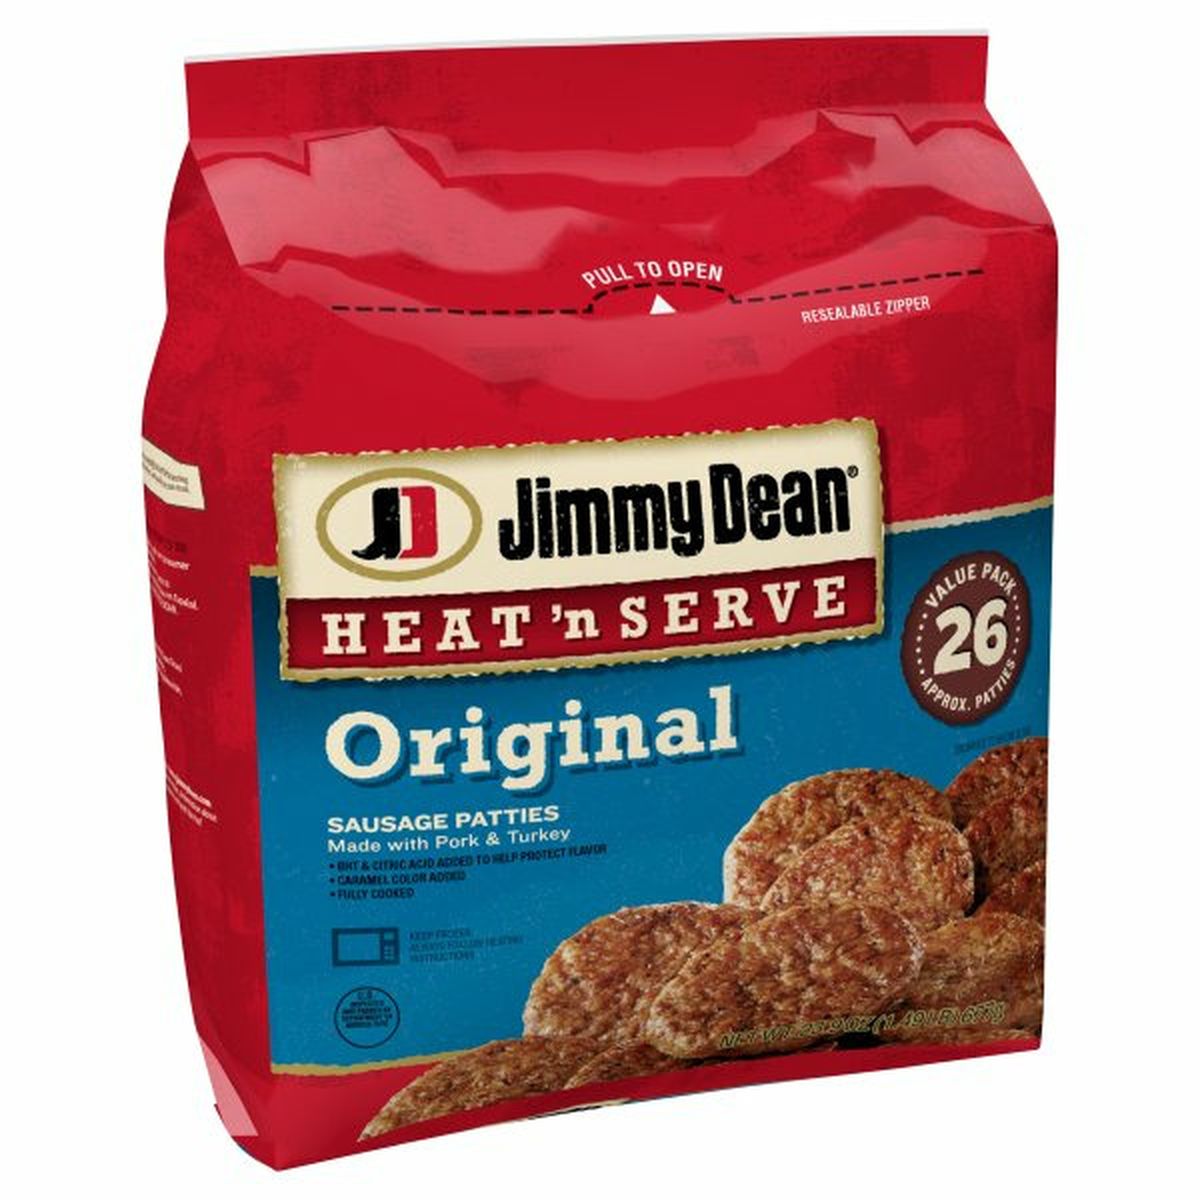 Calories in Jimmy Dean Heat 'n Serve Heat 'N Serve Original Pork Sausage Patties, 26 Count